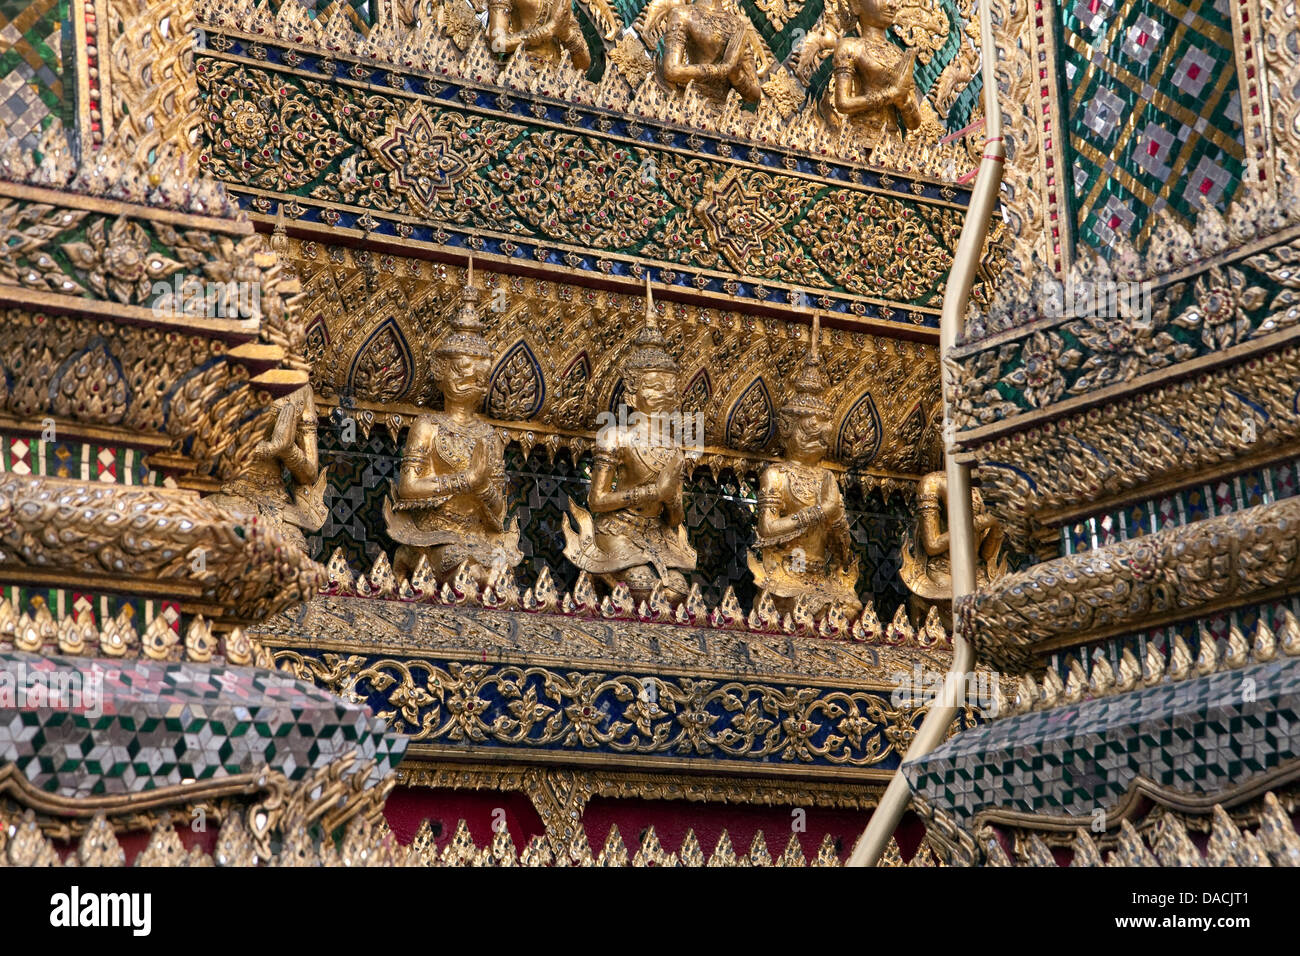 Detail, Grand Palace, Bangkok, Thailand Stock Photo